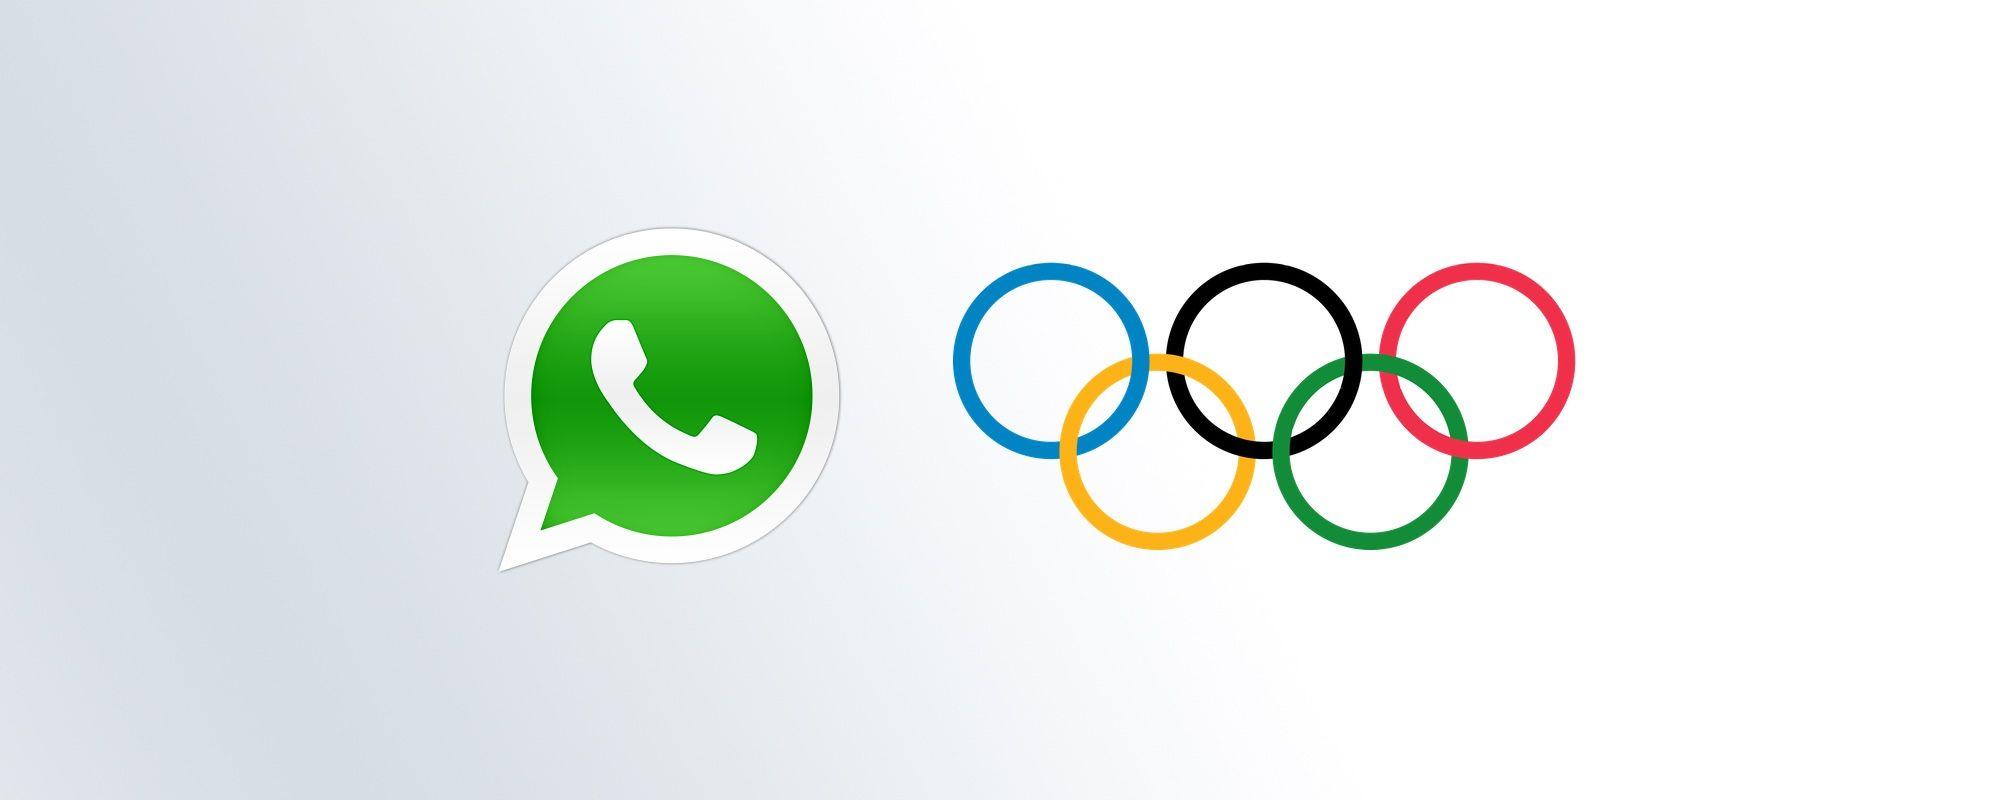 Emoji Brand Green Logo - WhatsApp Adds Olympic Rings Emoji